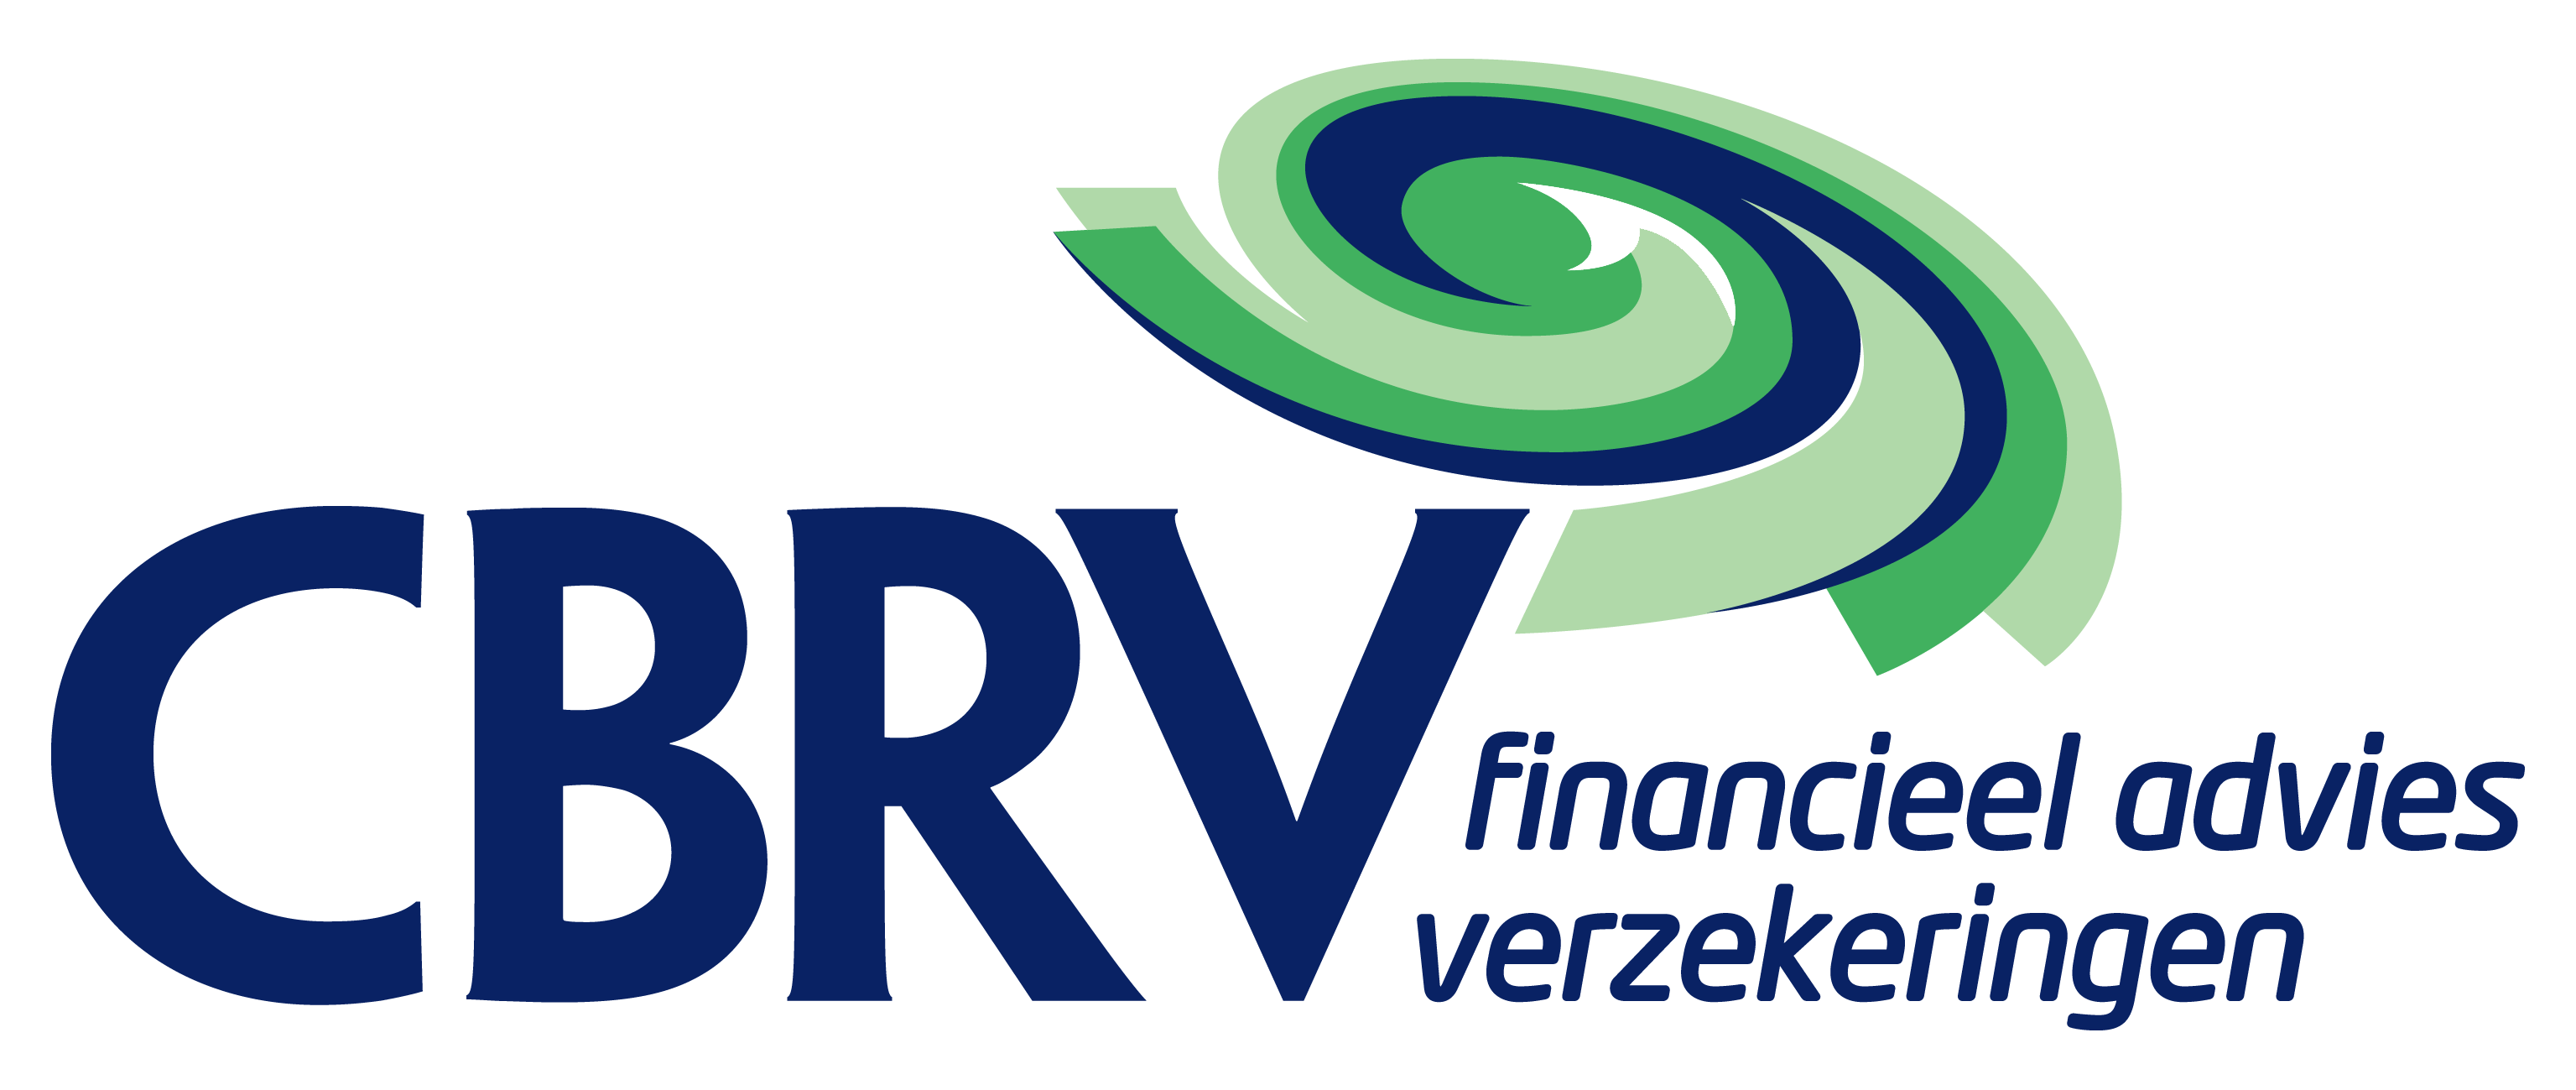 CBRV Verzekeringen & Financieel advies